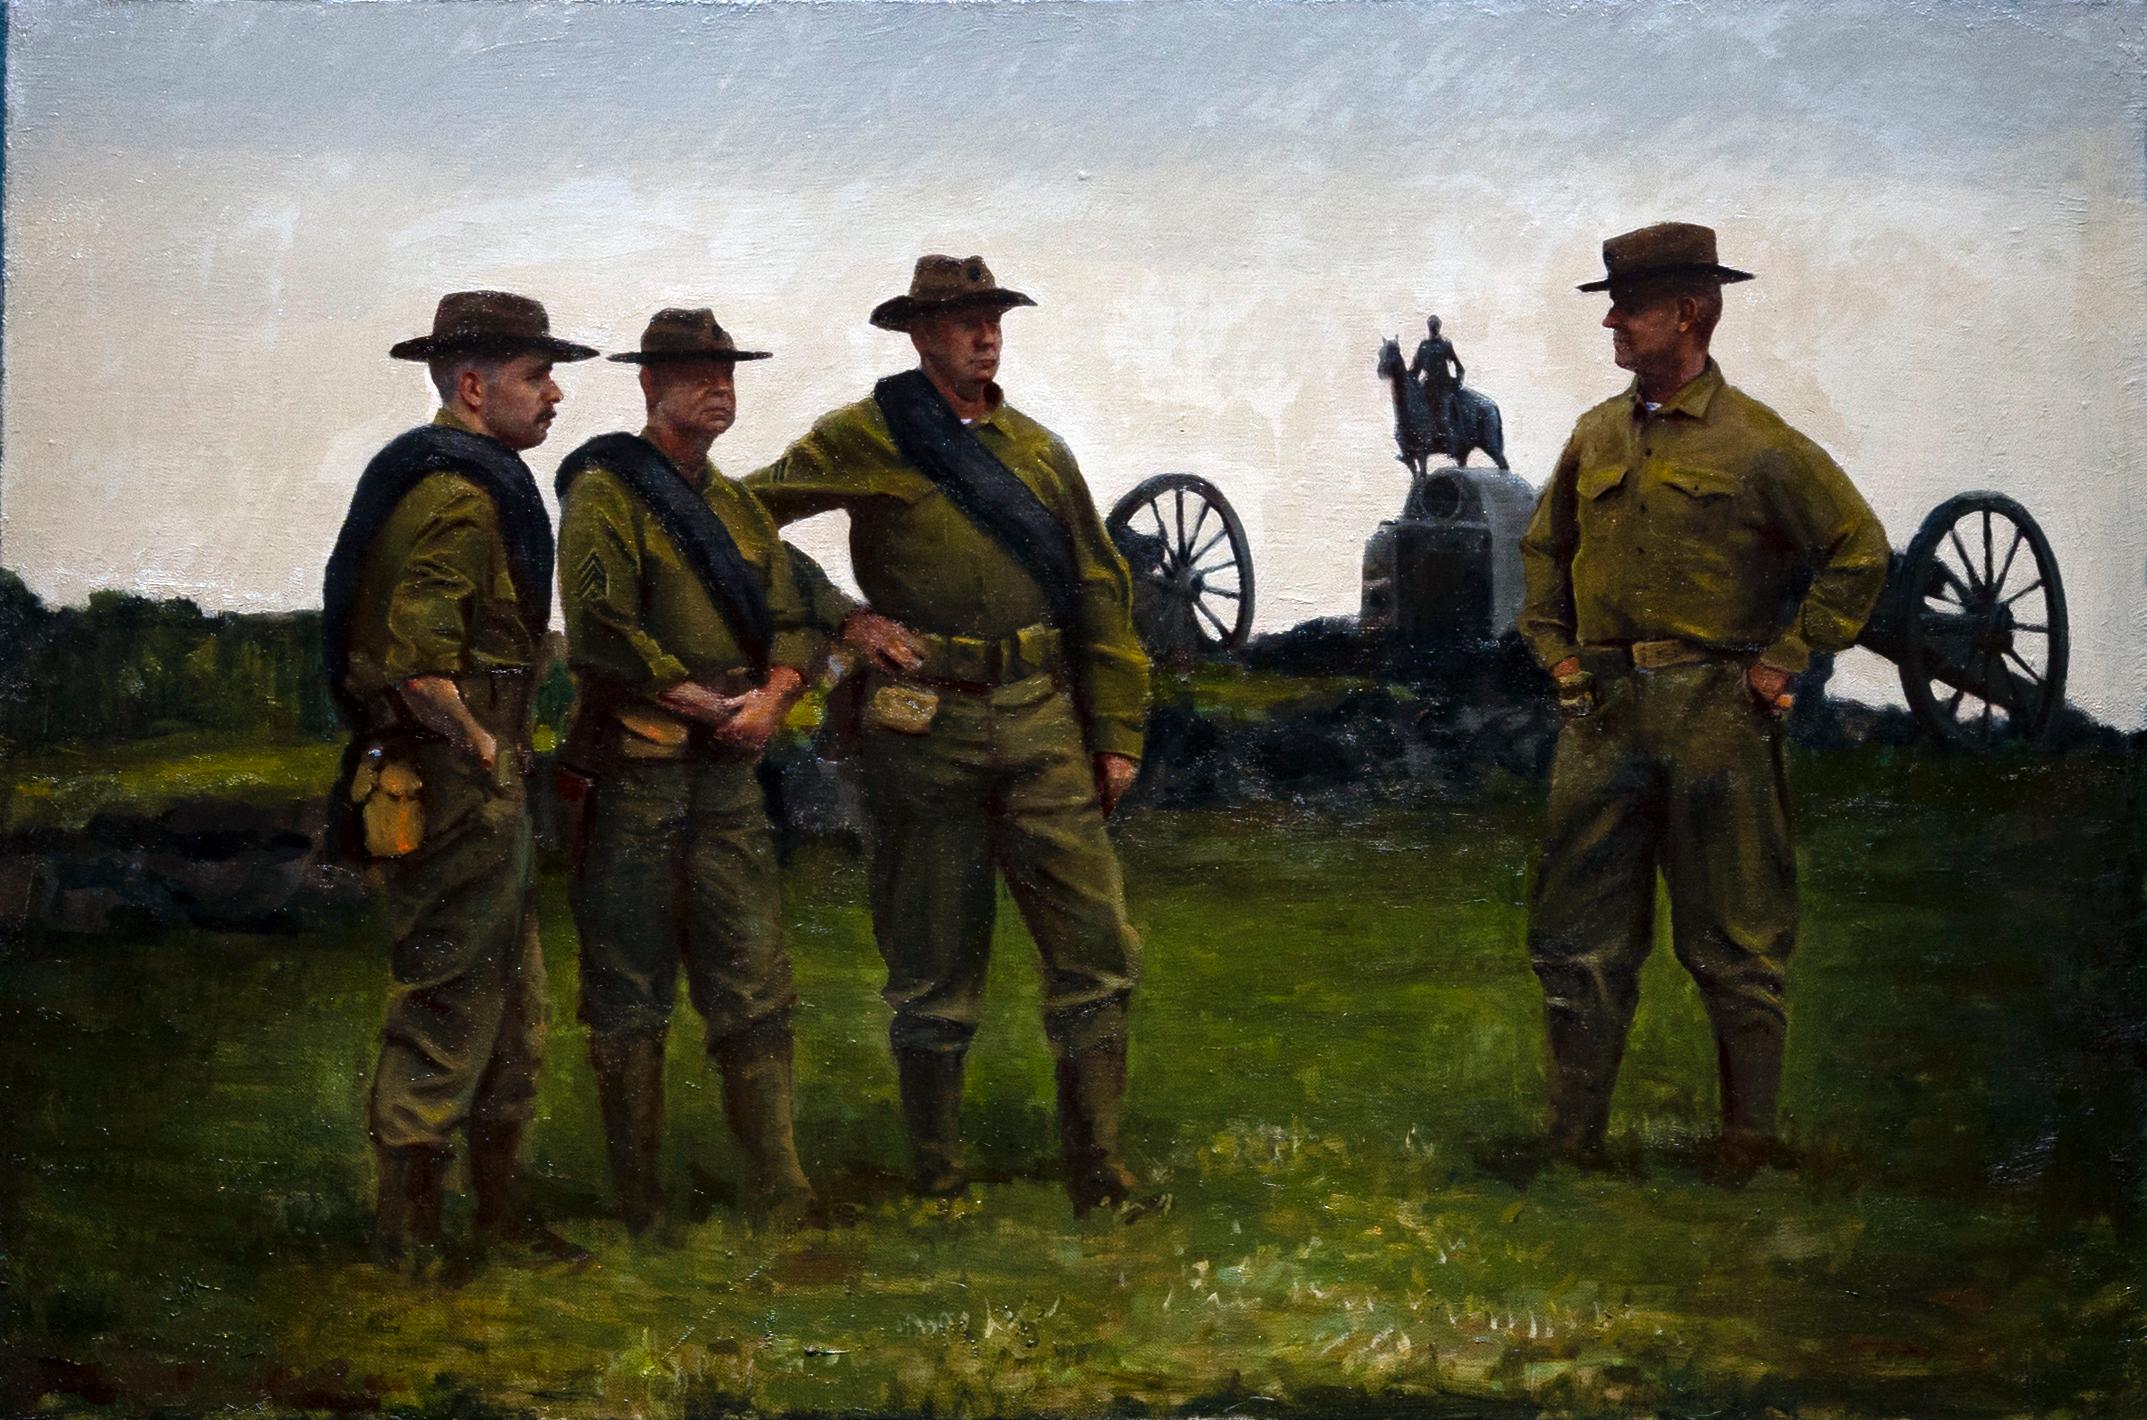 Union - Groupe de soldats unis debout sur un terrain ouvert, huile sur lin